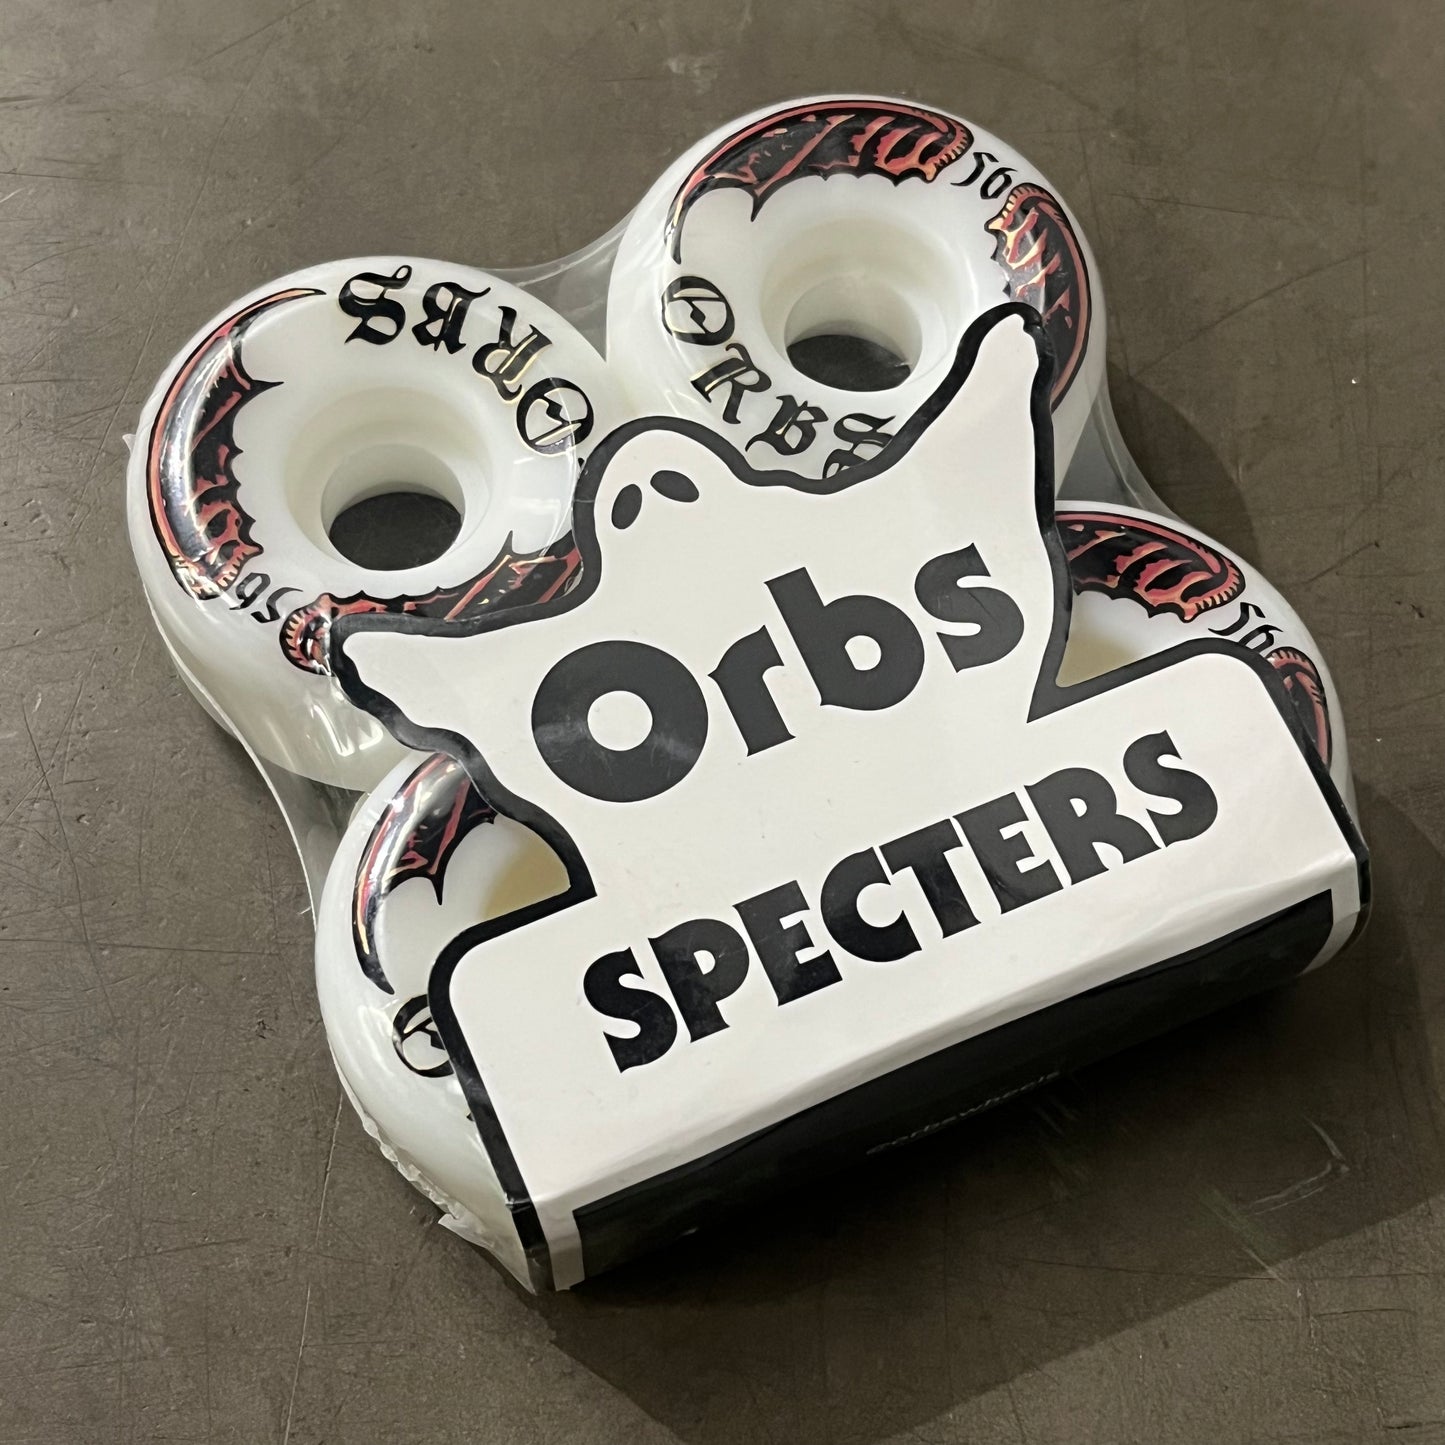 Orbs Skateboard Wheels